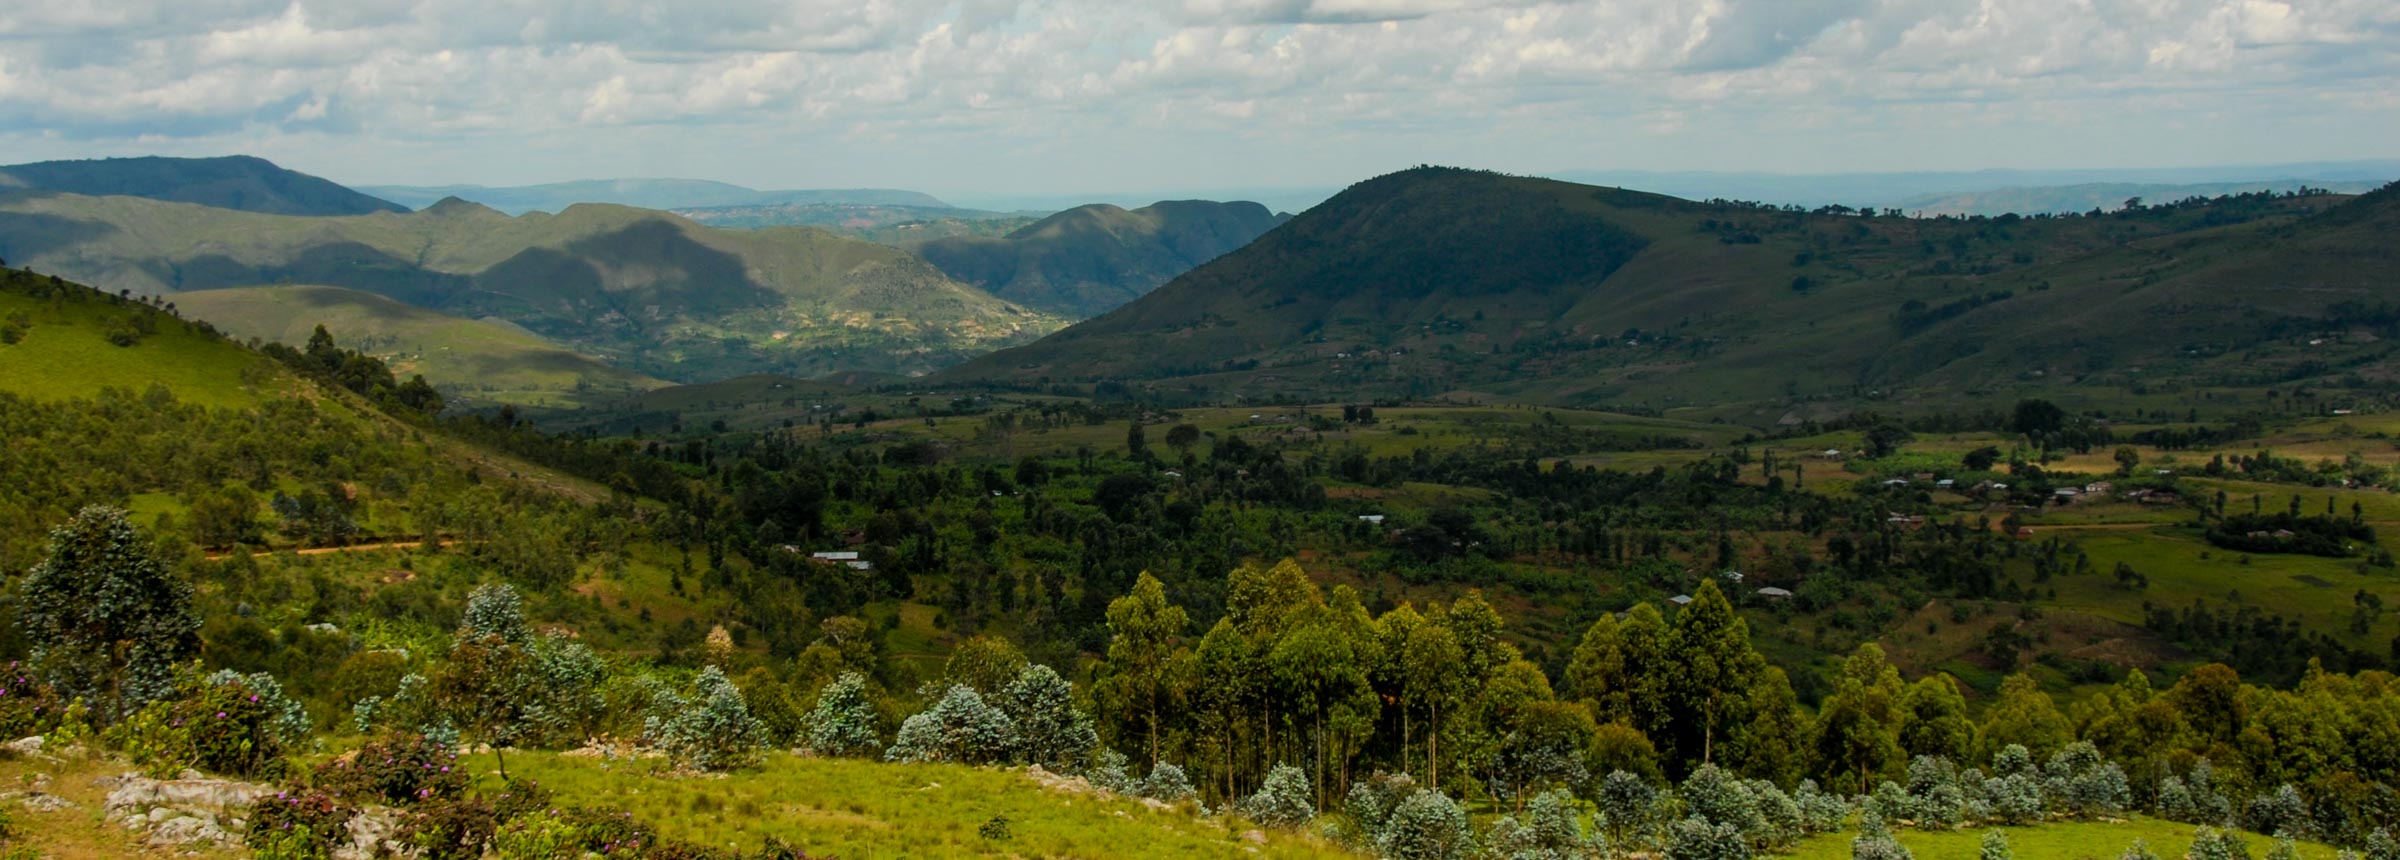 burundi landscape